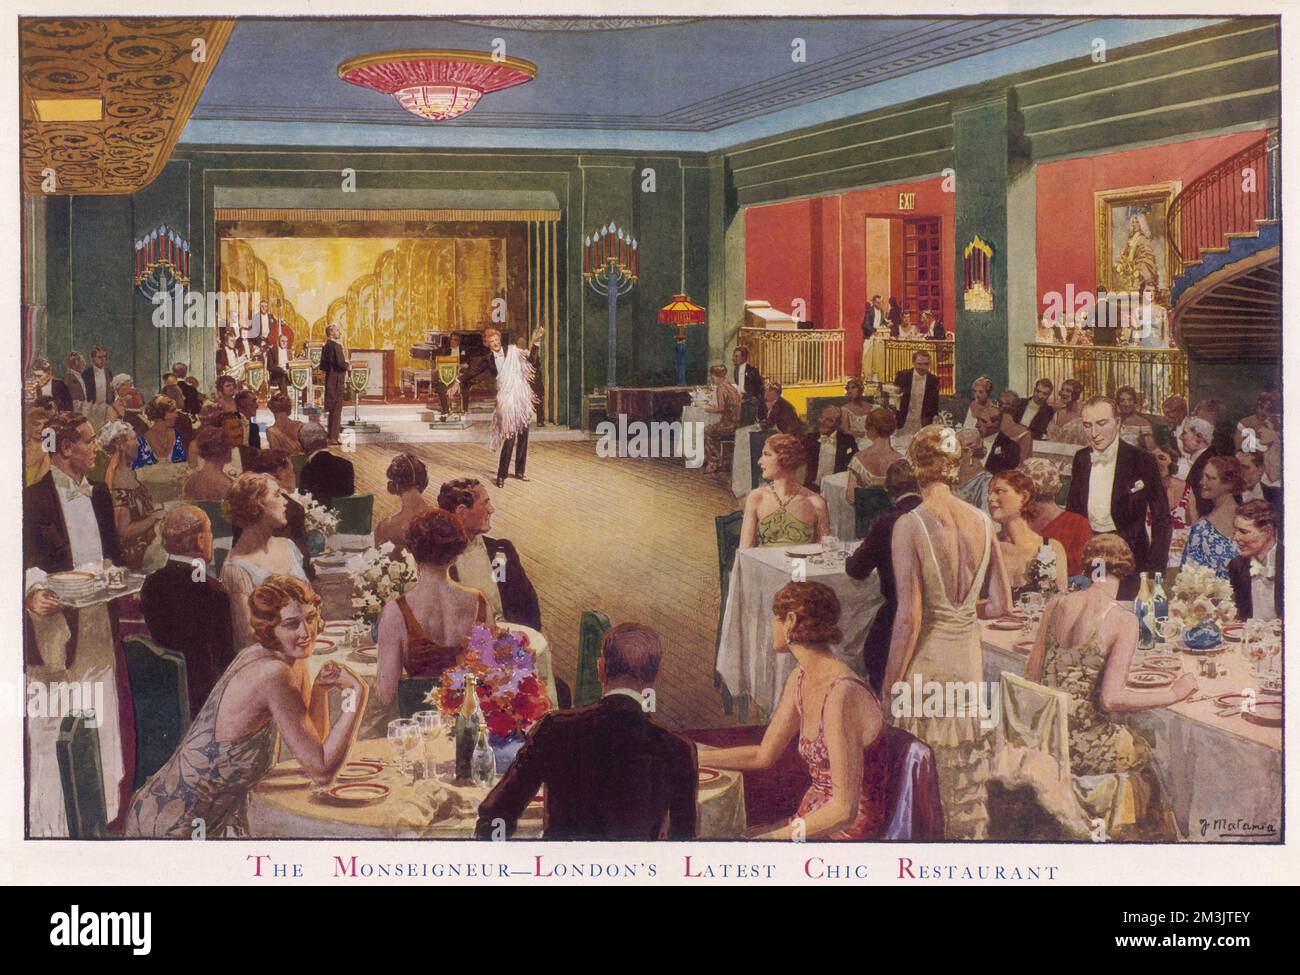 Serata al Monseigneur, un elegante ristorante londinese, con cena che guarda uno spettacolo di cabaret. Il ristorante Monseigneur è stato uno dei tre principali luoghi di interesse per la musica da ballo negli anni '1930s. Ha condiviso la preminenza rivale con il Savoy Restaurant e il Mayfair Hotel come le migliori vetrine per la musica popolare del giorno. Roy Fox e Lew Stone erano i bandleader che abitavano il Monseigneur durante gli anni della depressione nel Regno Unito. Il noto ristoratore M. taglioni si vede in primo piano a destra. Data: 1931 Foto Stock